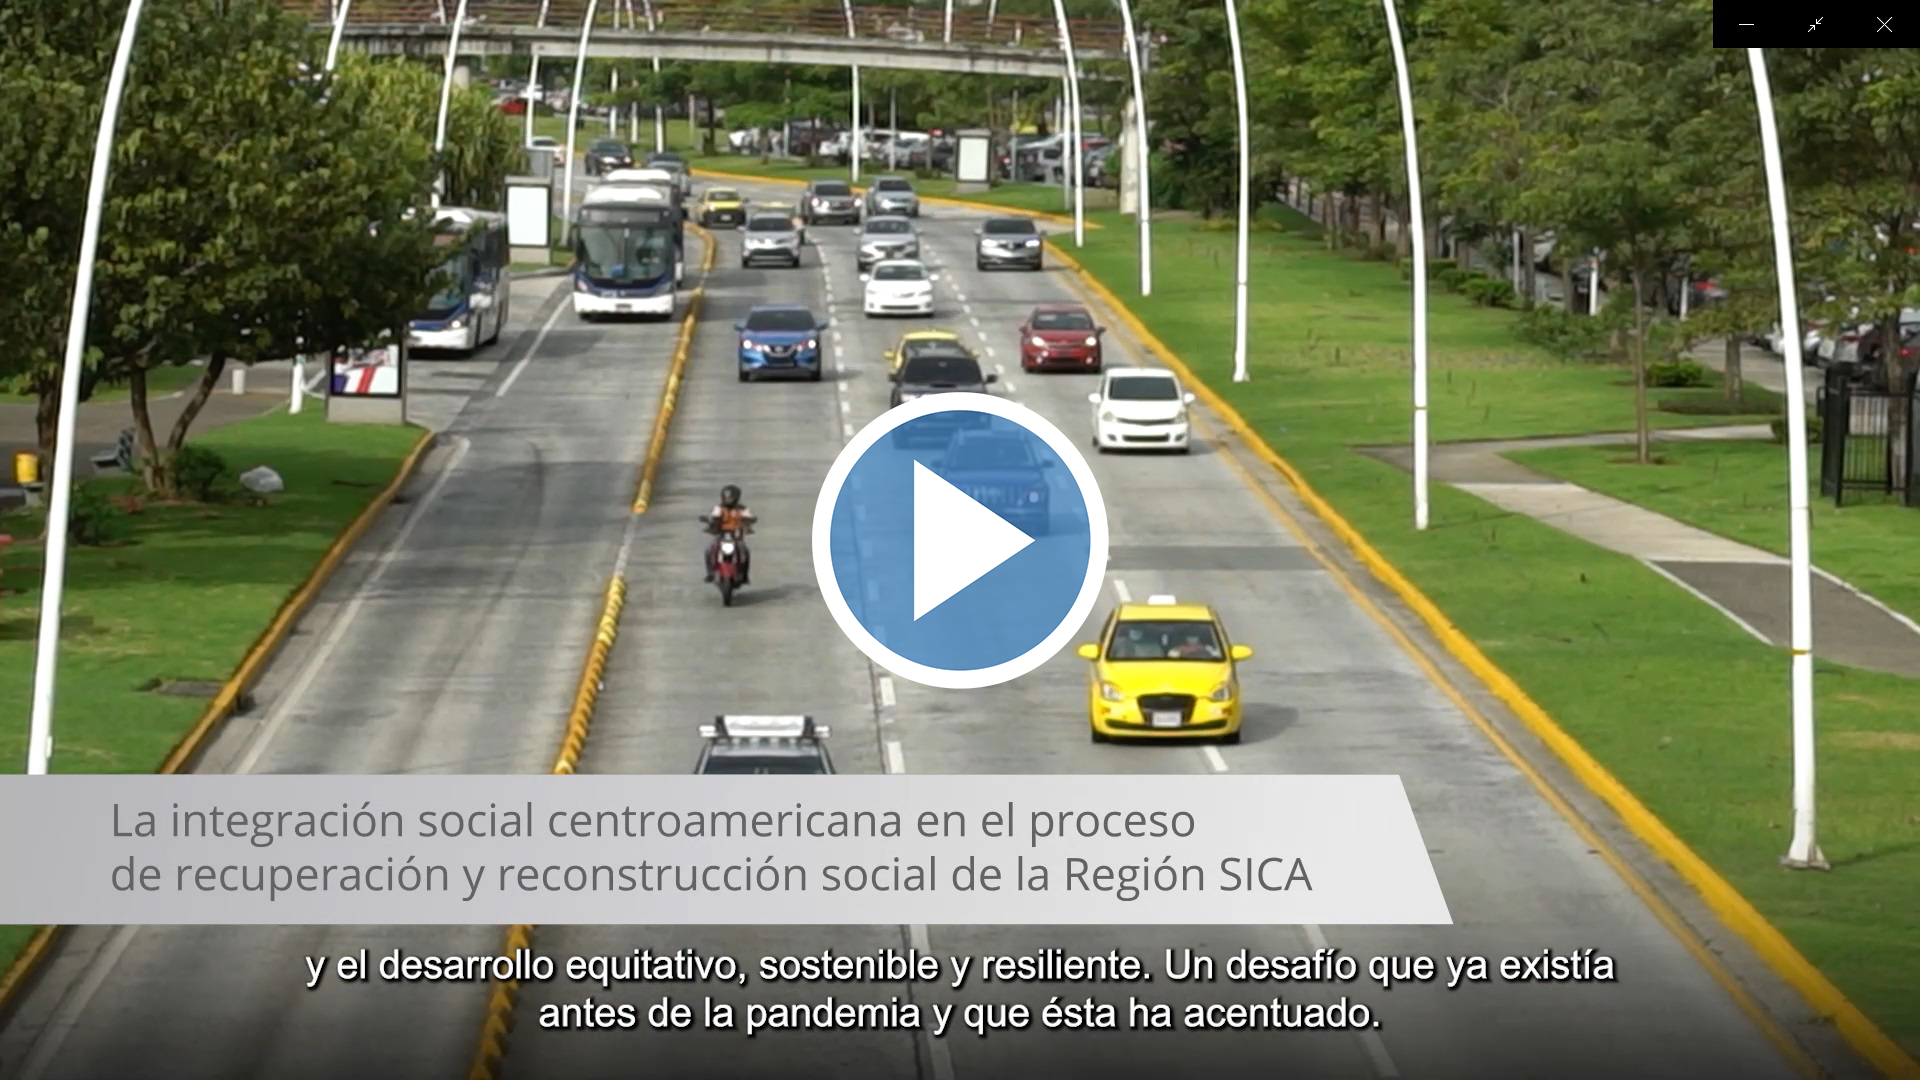 La integración social centroamericana en el proceso de reconstrucción social de la región SICA